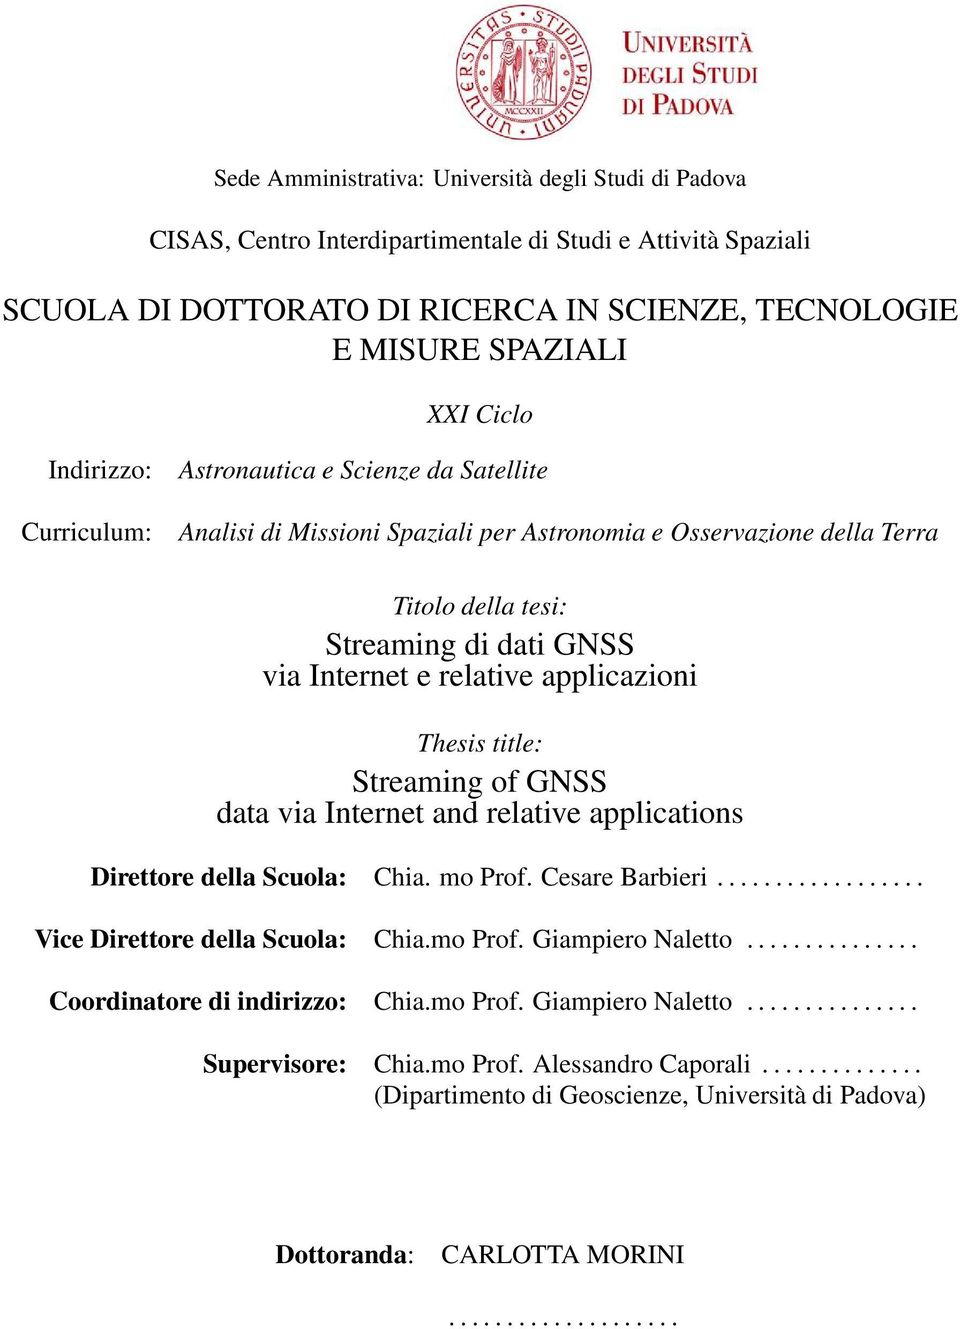 applicazioni Thesis title: Streaming of GNSS data via Internet and relative applications Direttore della Scuola: Chia. mo Prof. Cesare Barbieri.................. Vice Direttore della Scuola: Chia.